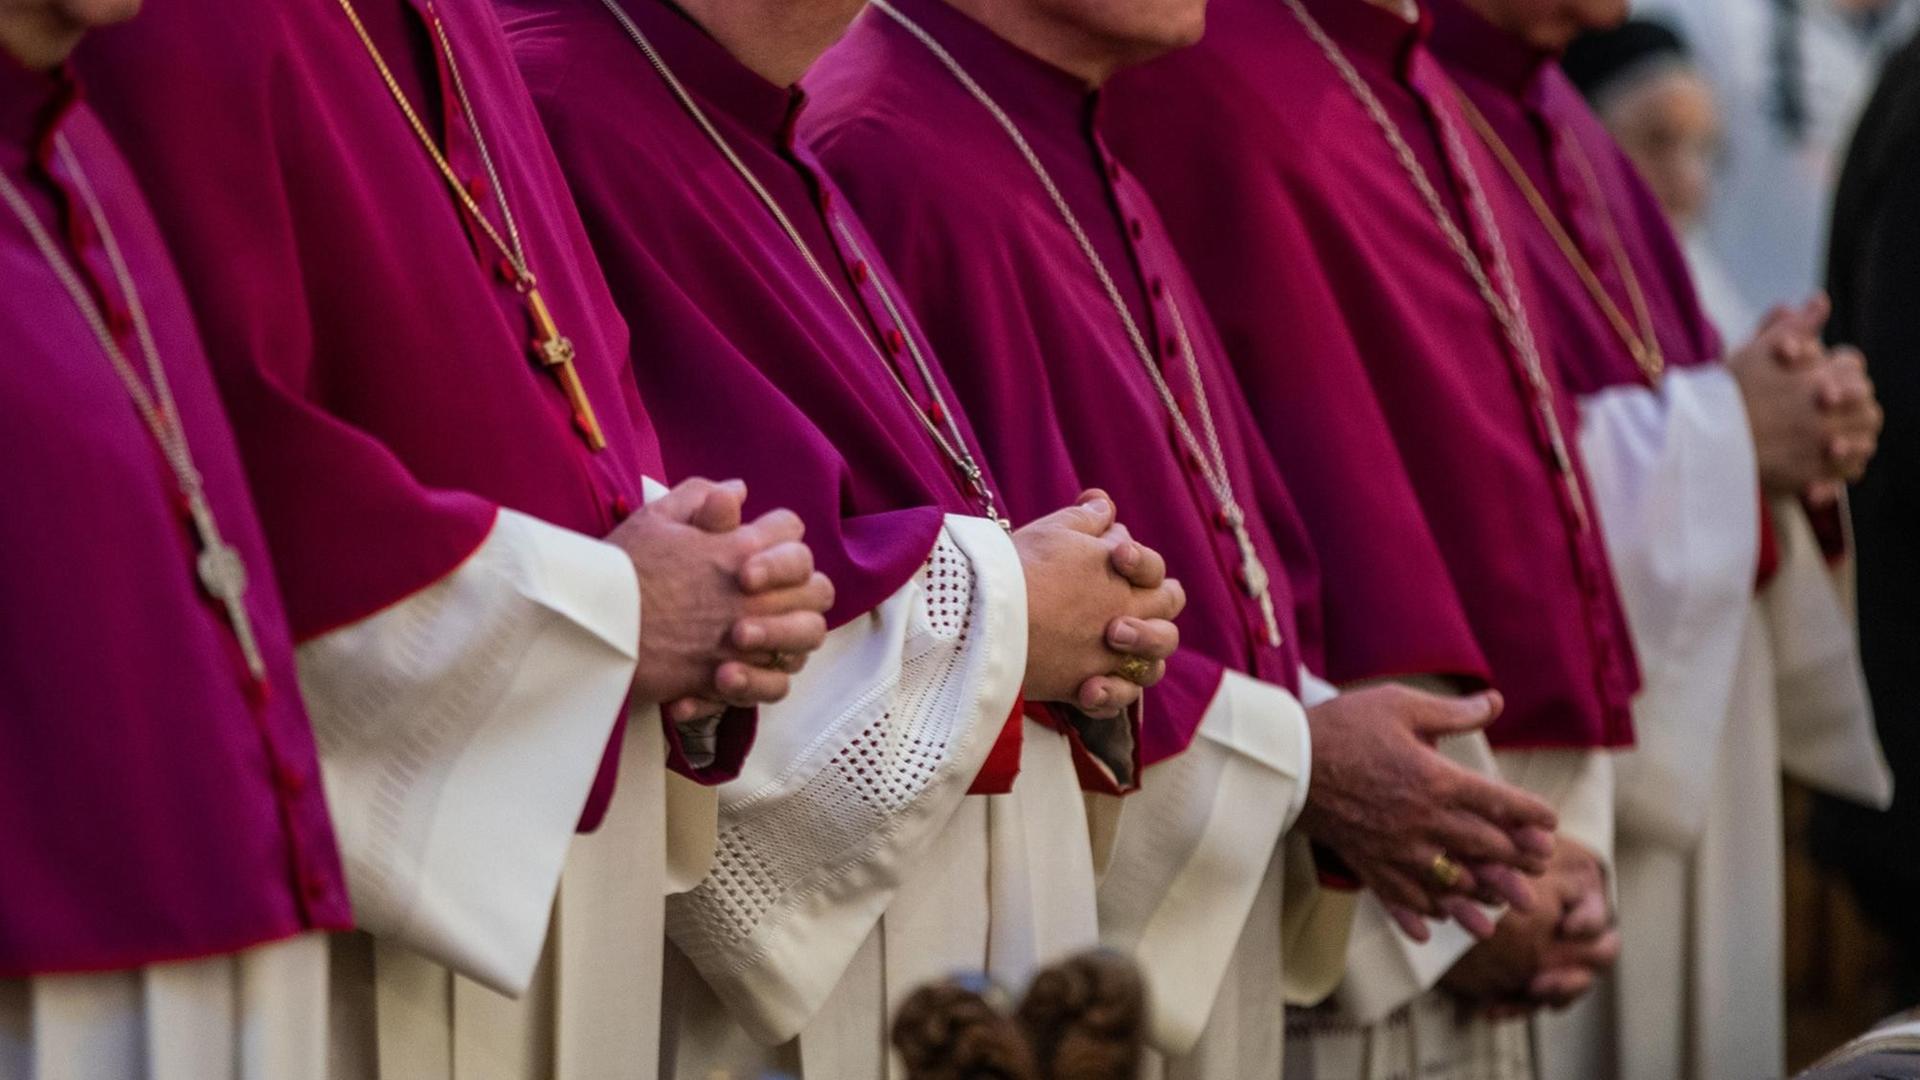 Sechs katholische Bischhöfe stehen in violetten Soutanen mit weißen Chorhemden gekleidet während einer Messe in einer Bank. Sie haben die Hände zum Gebet gefaltet.